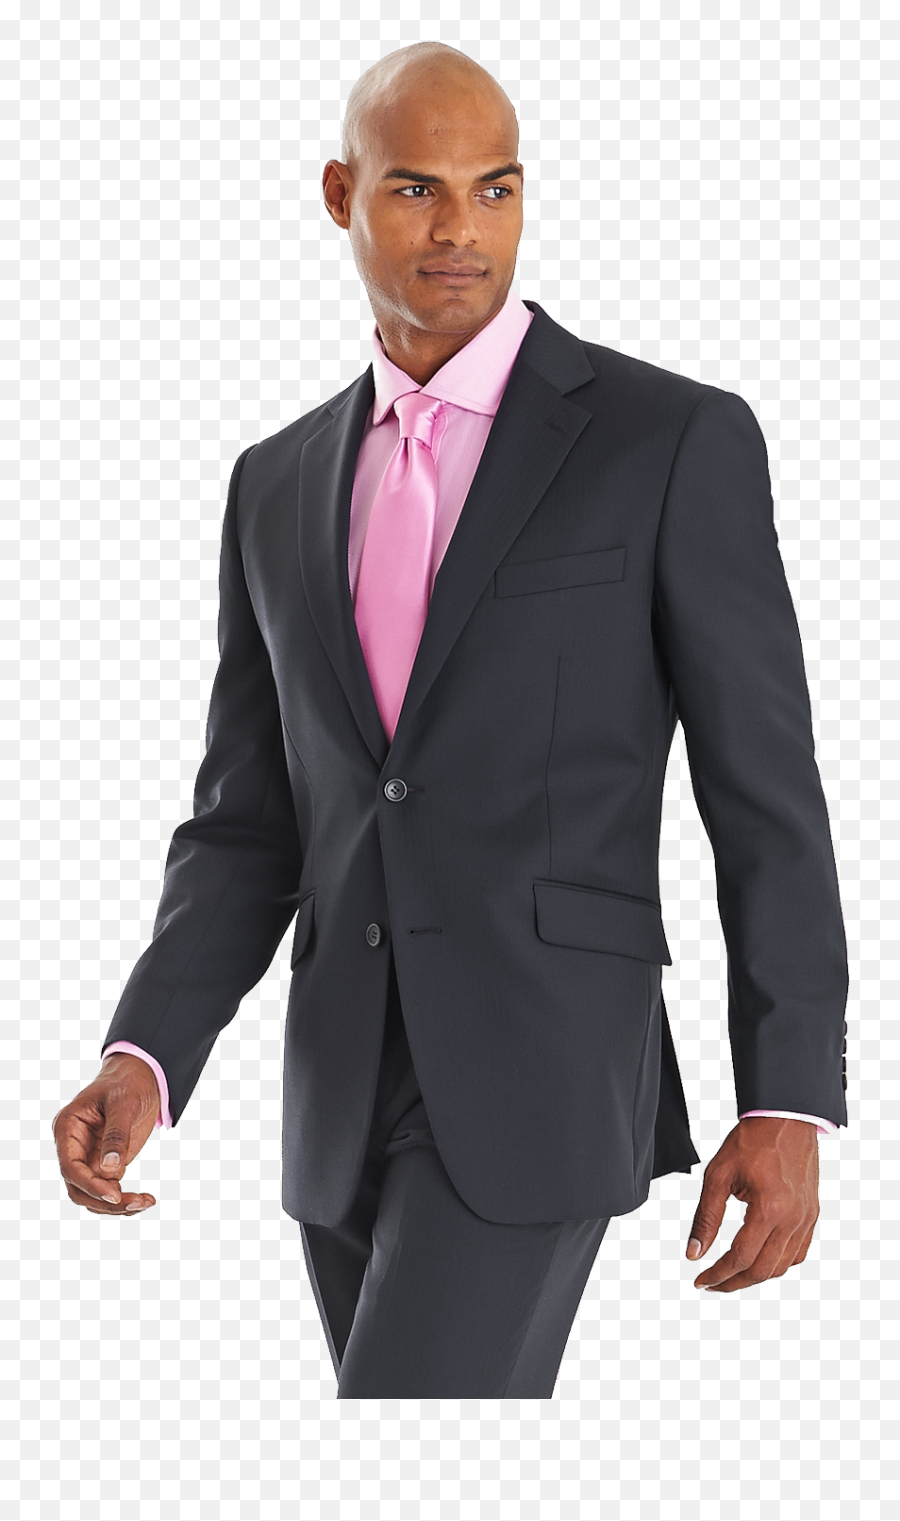 Jacket Clipart 3 Piece Suit Jacket 3 Piece Suit Transparent - Black Suit With Pink Tie Emoji,Suit Png